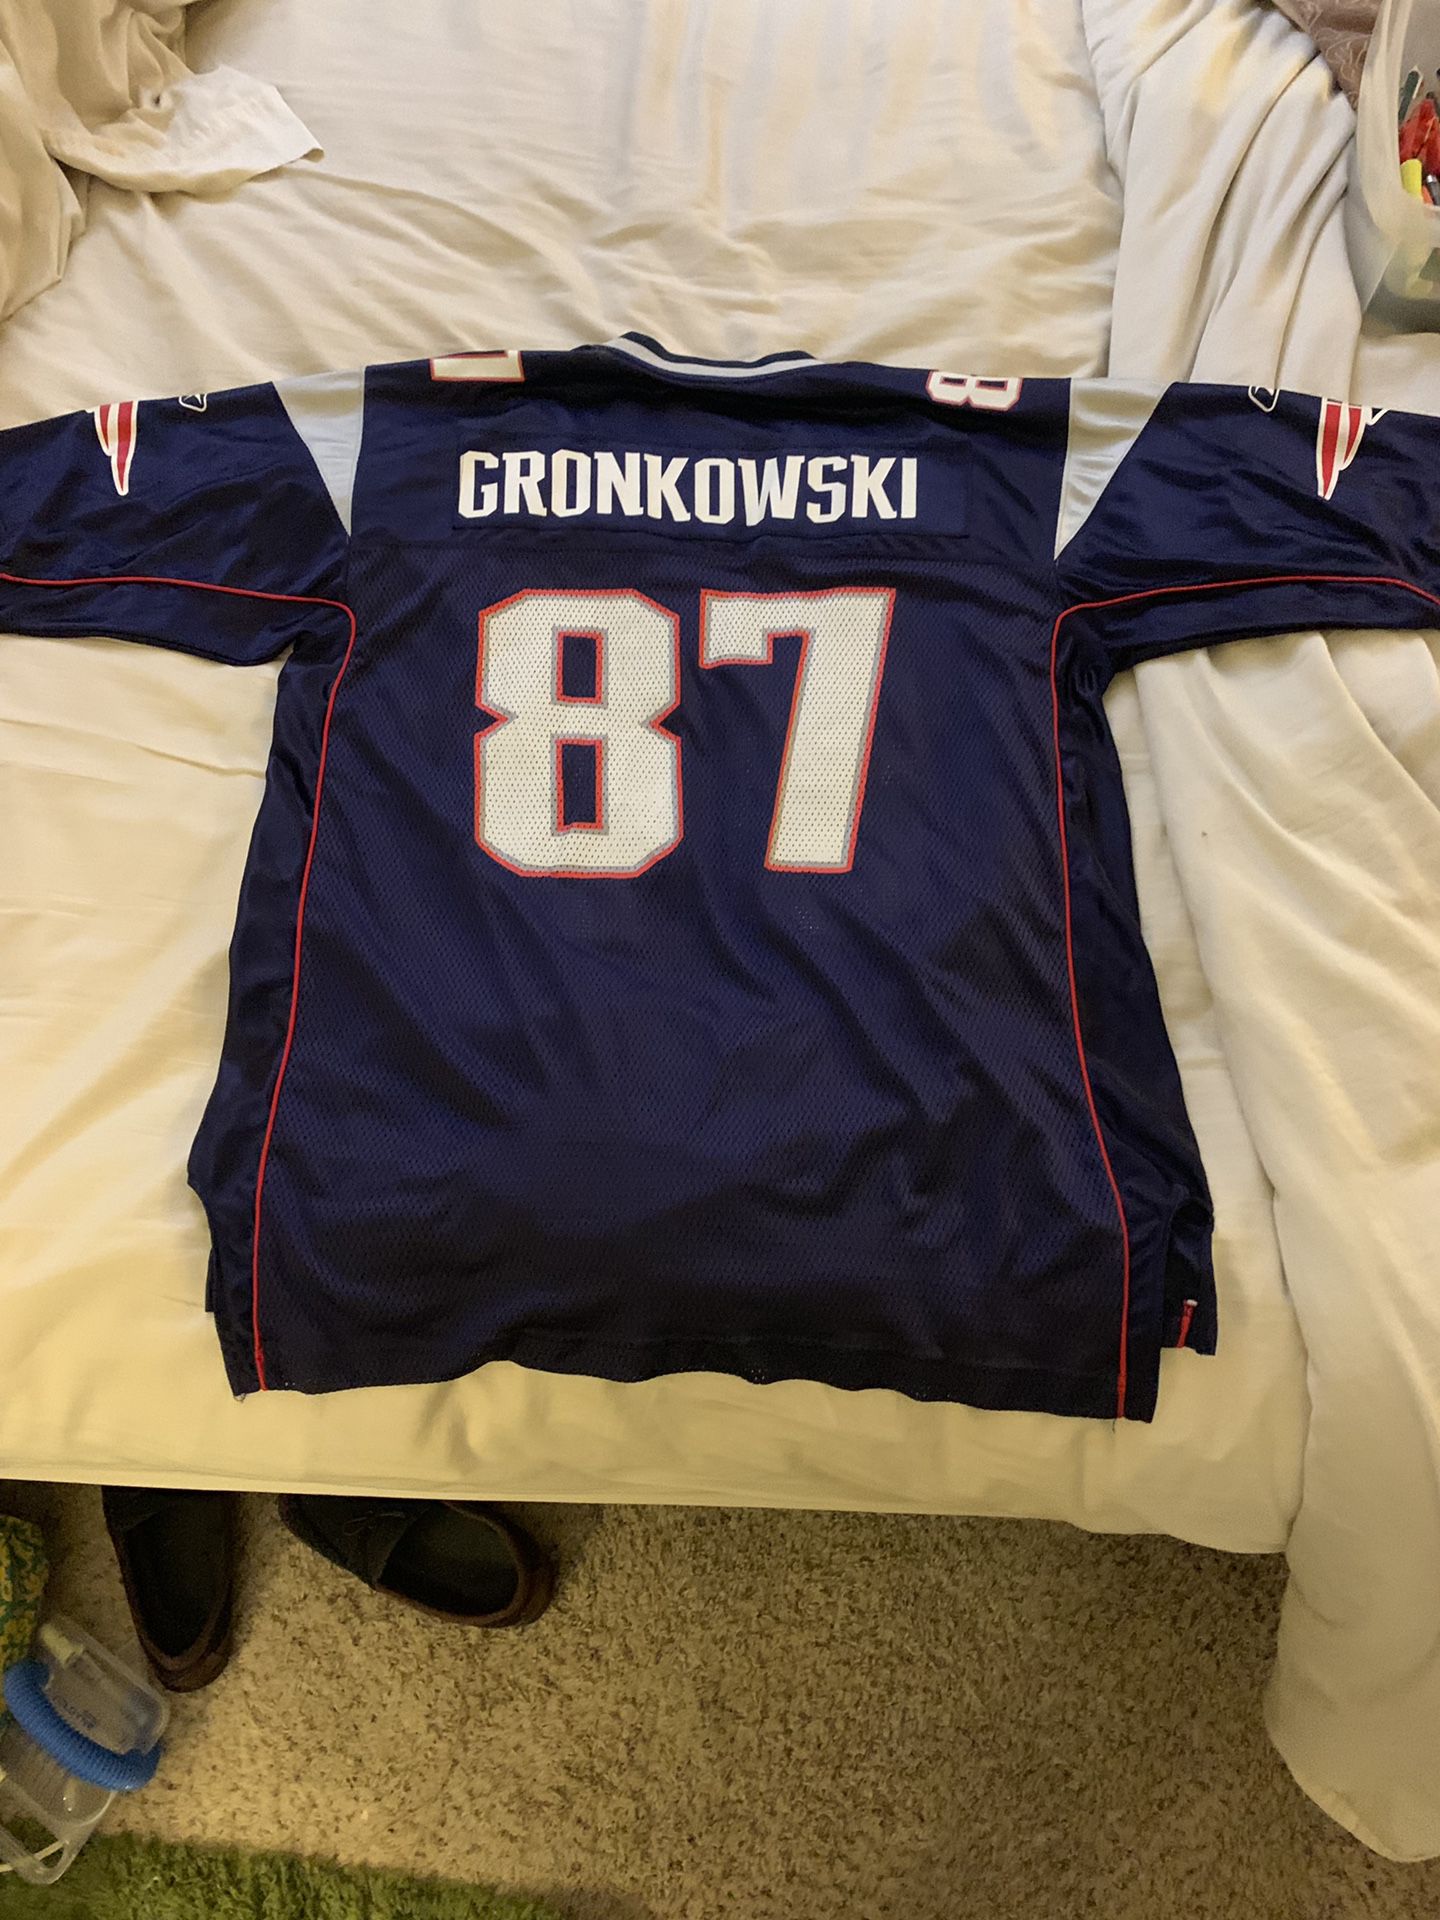 Patriots jersey #87 Gronkowski